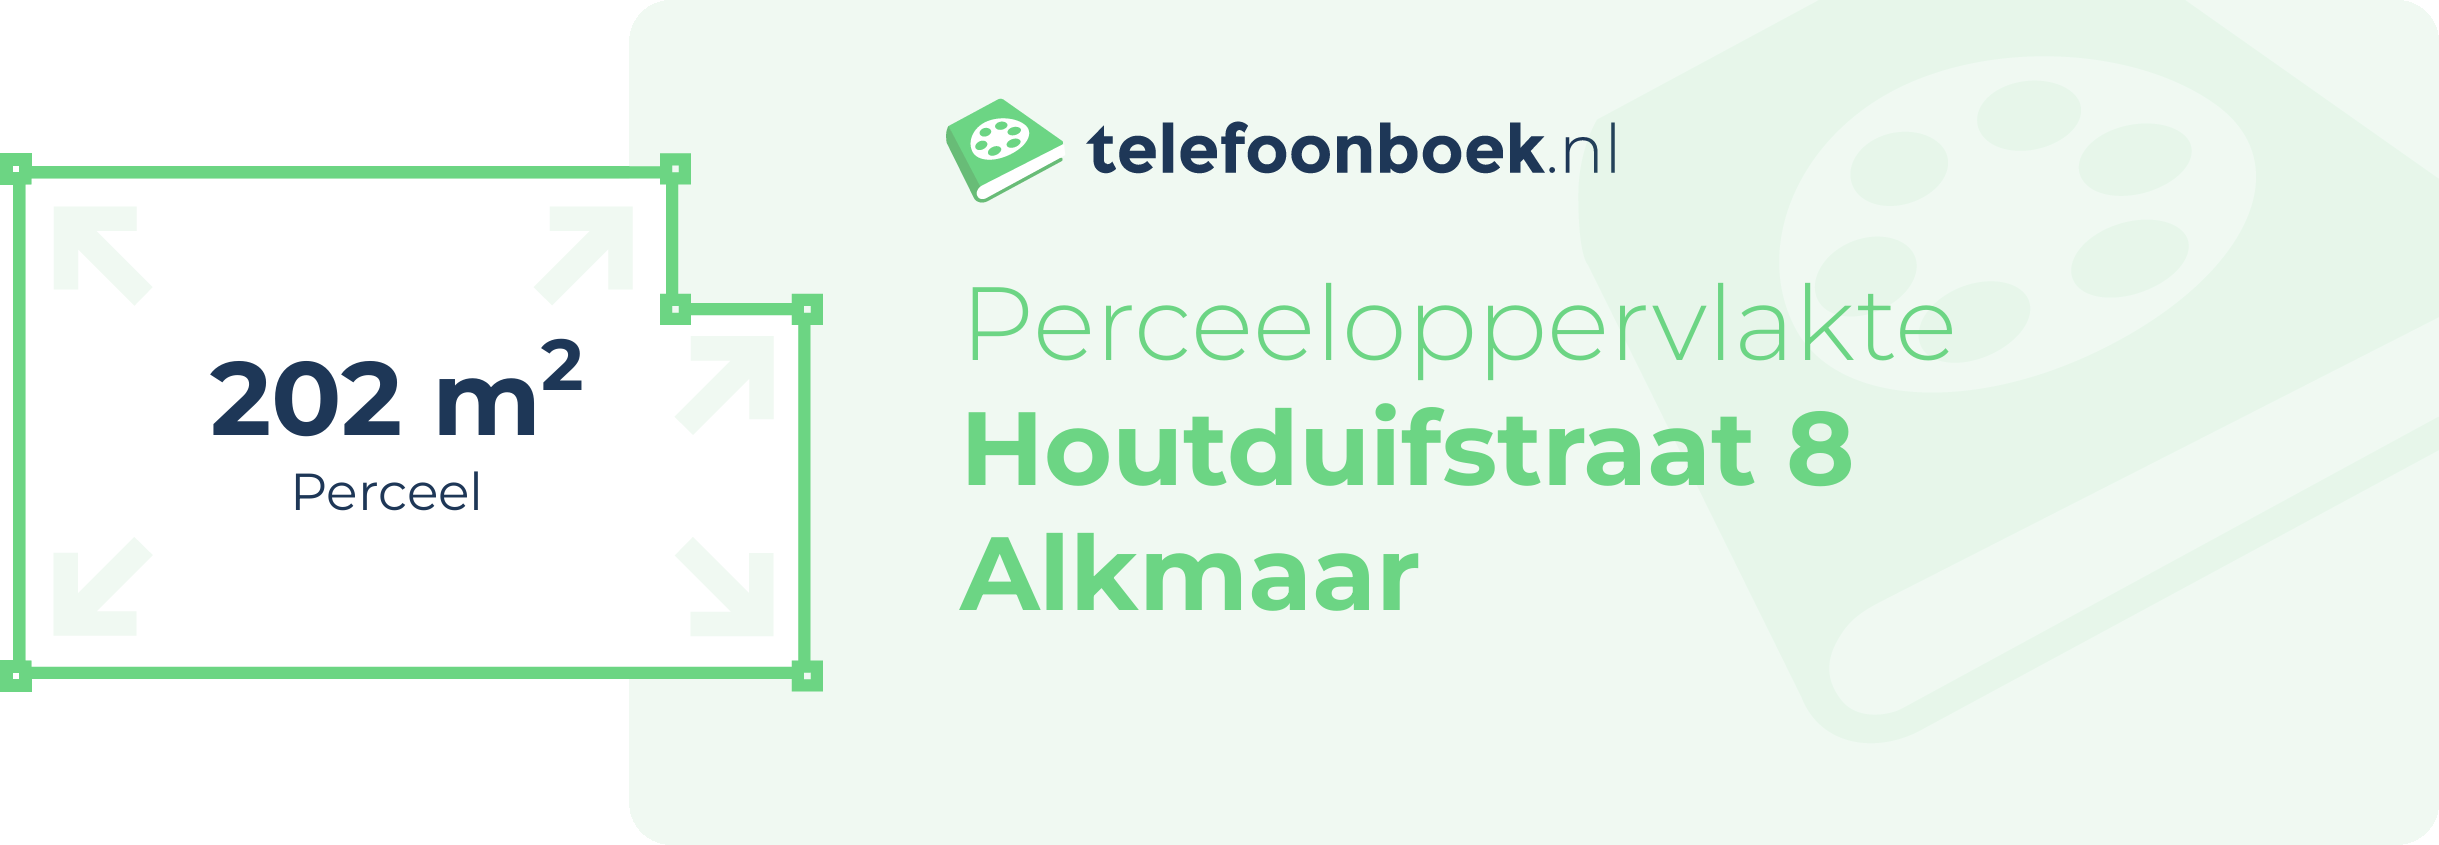 Perceeloppervlakte Houtduifstraat 8 Alkmaar